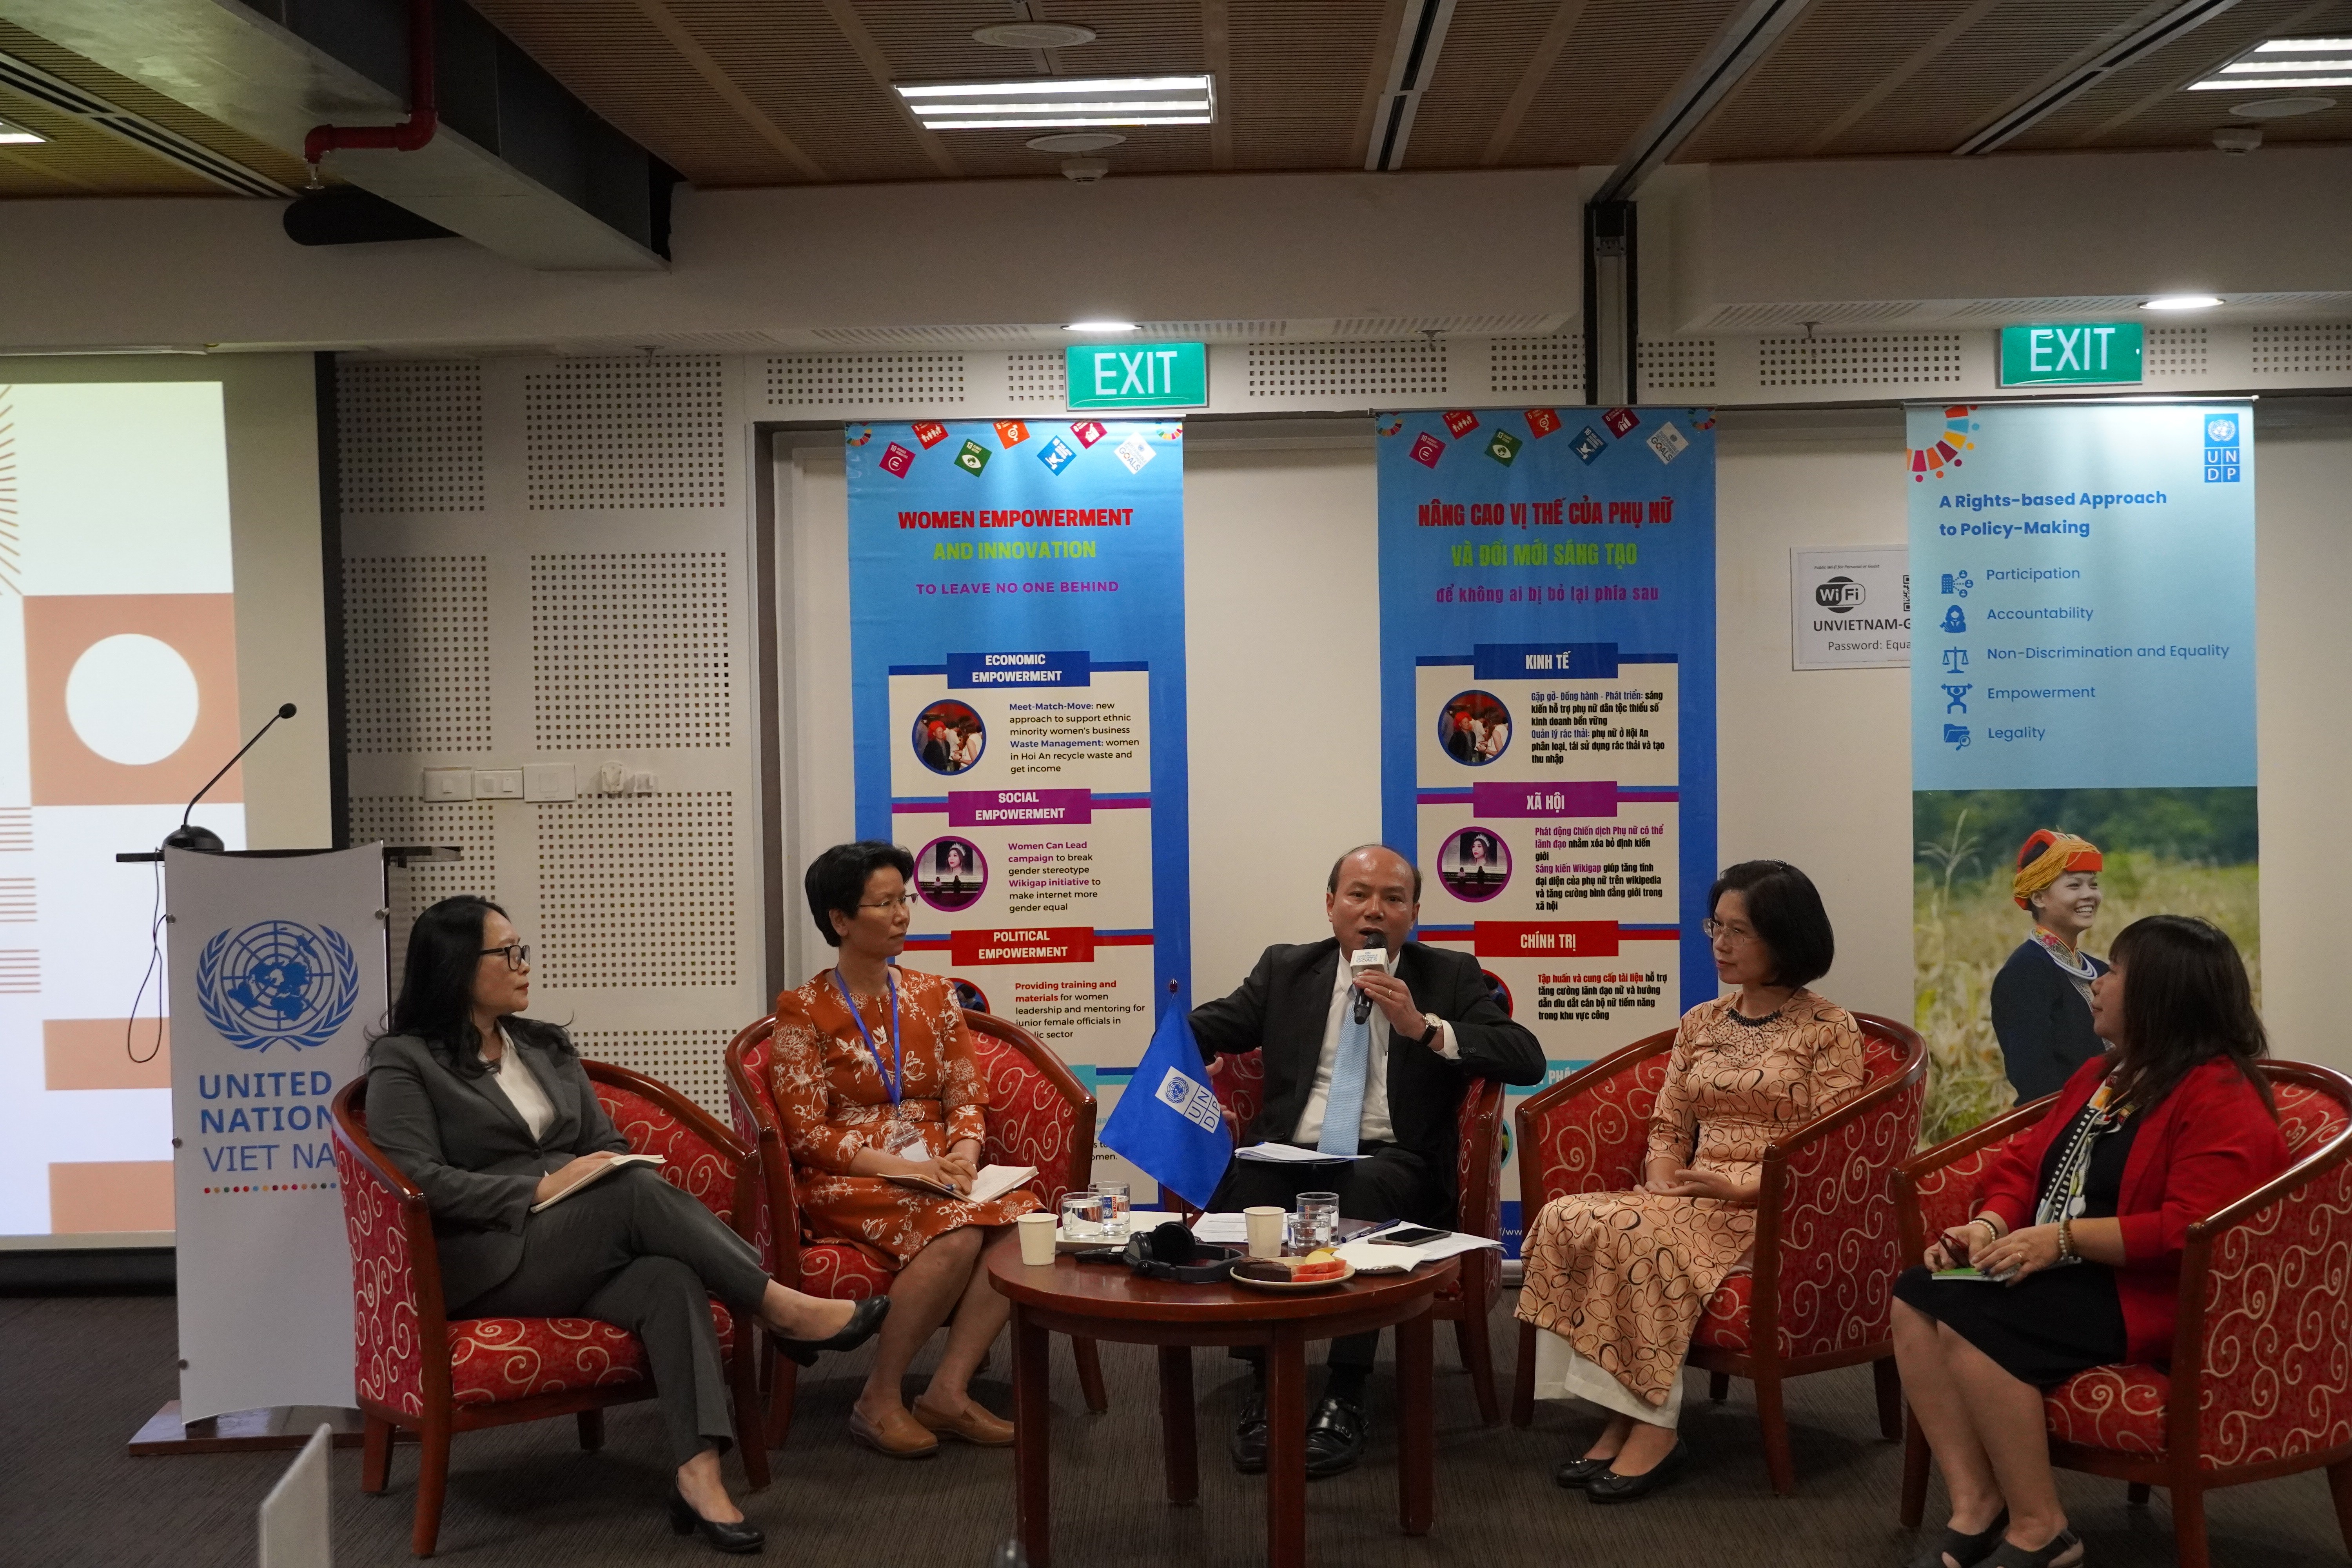 Đối thoại - UNDP: Việt Nam đạt được tiến bộ về tỉ lệ phụ nữ tham chính 